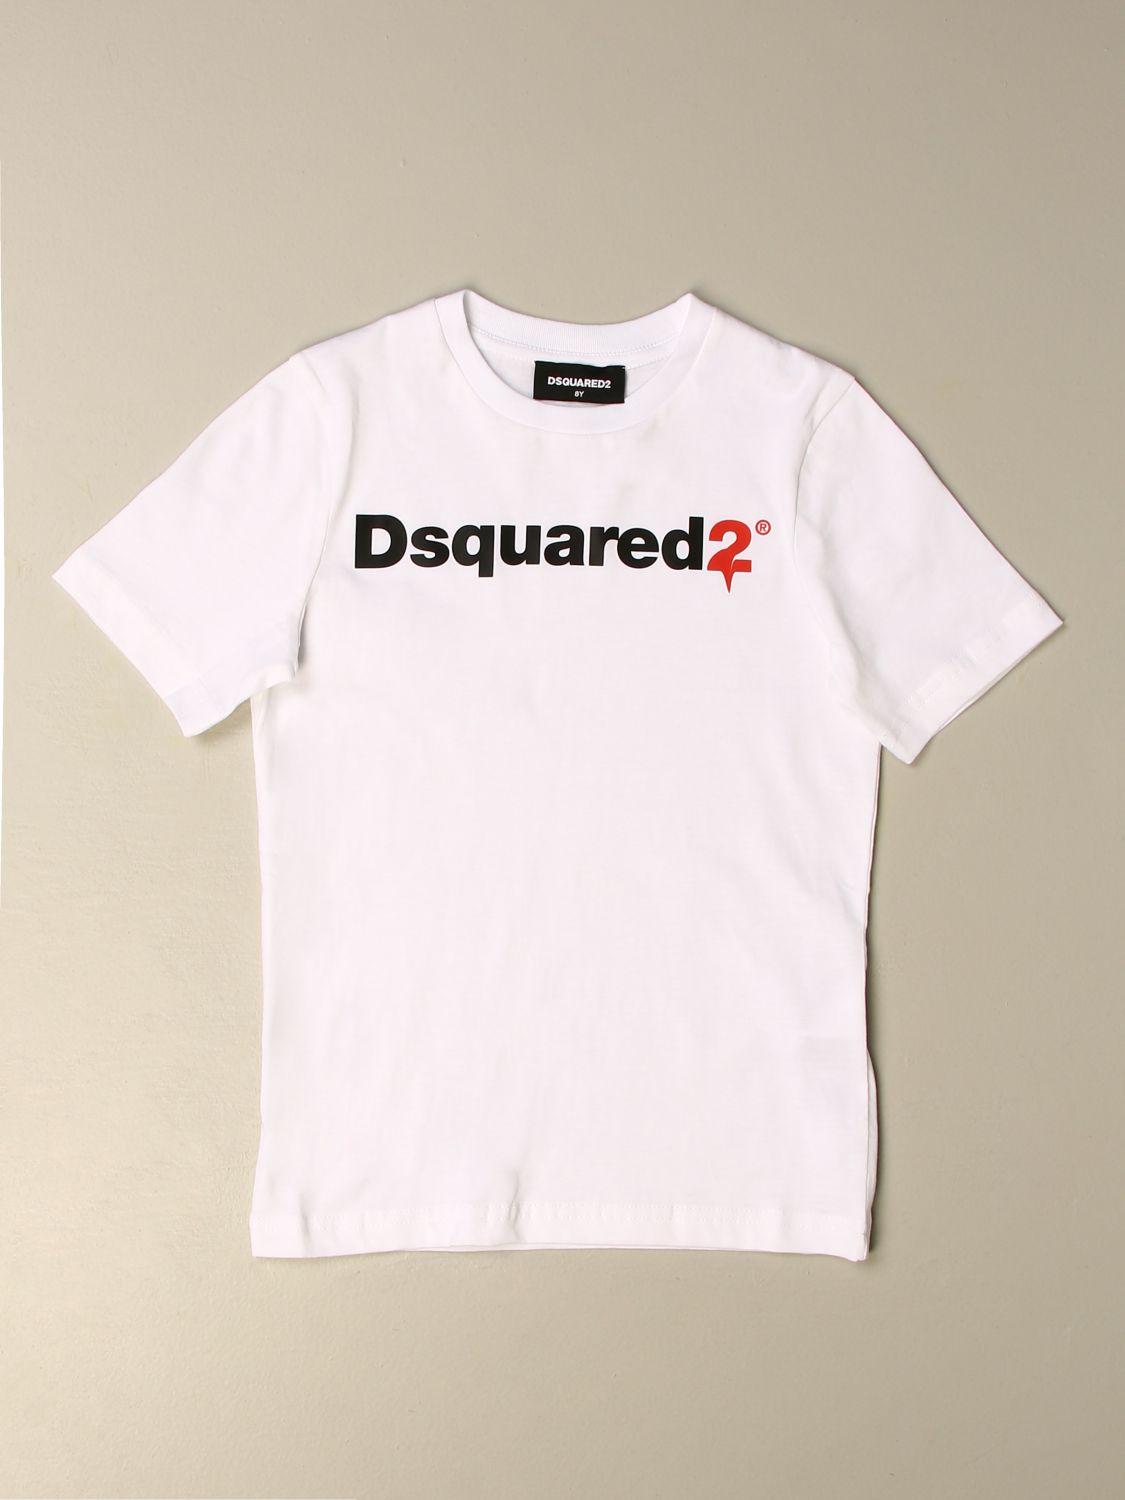 junior dsquared t shirt